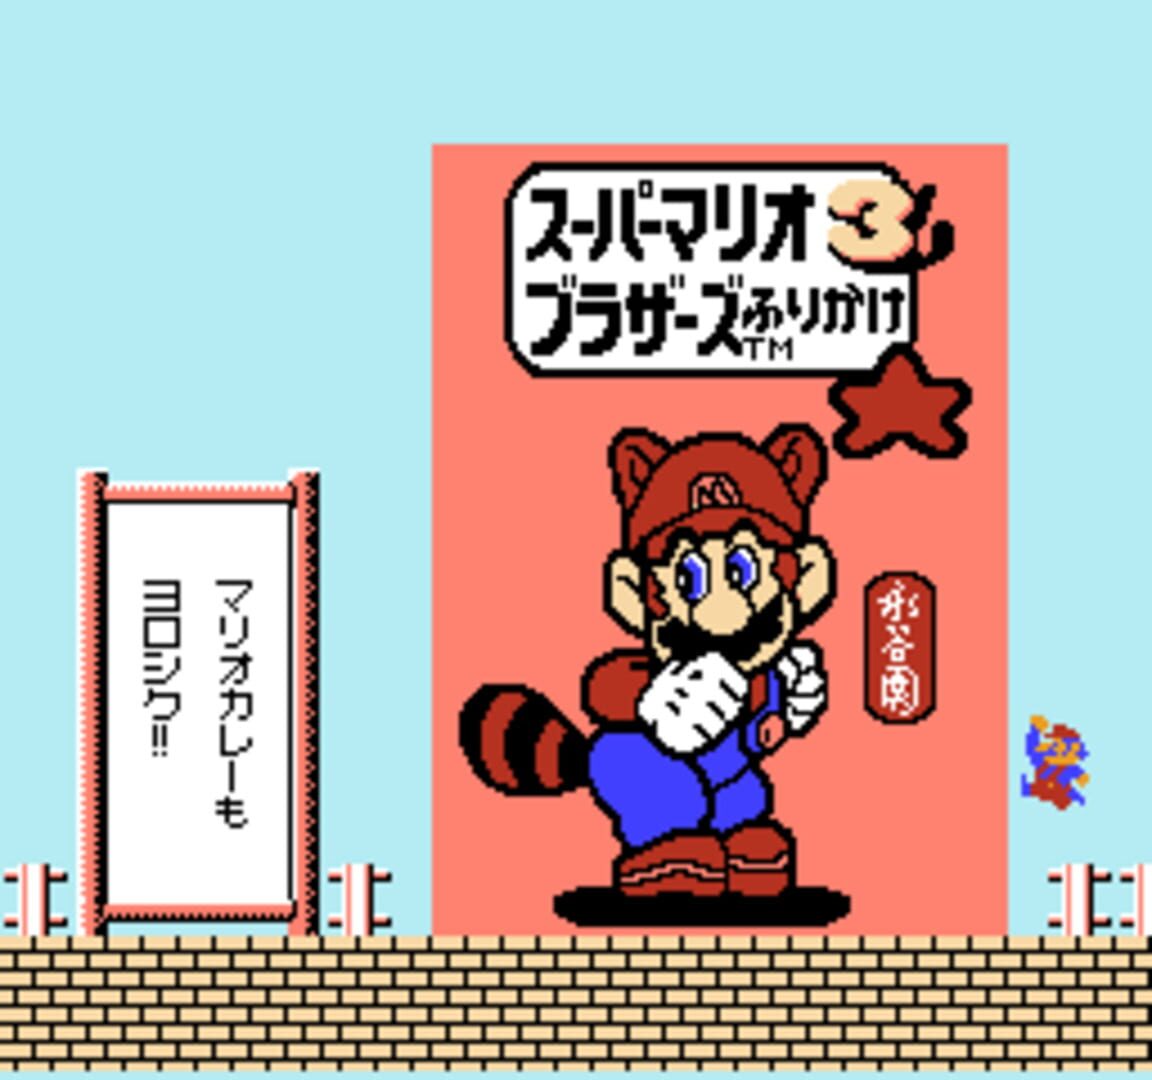 Captura de pantalla - Kaettekita Mario Bros.